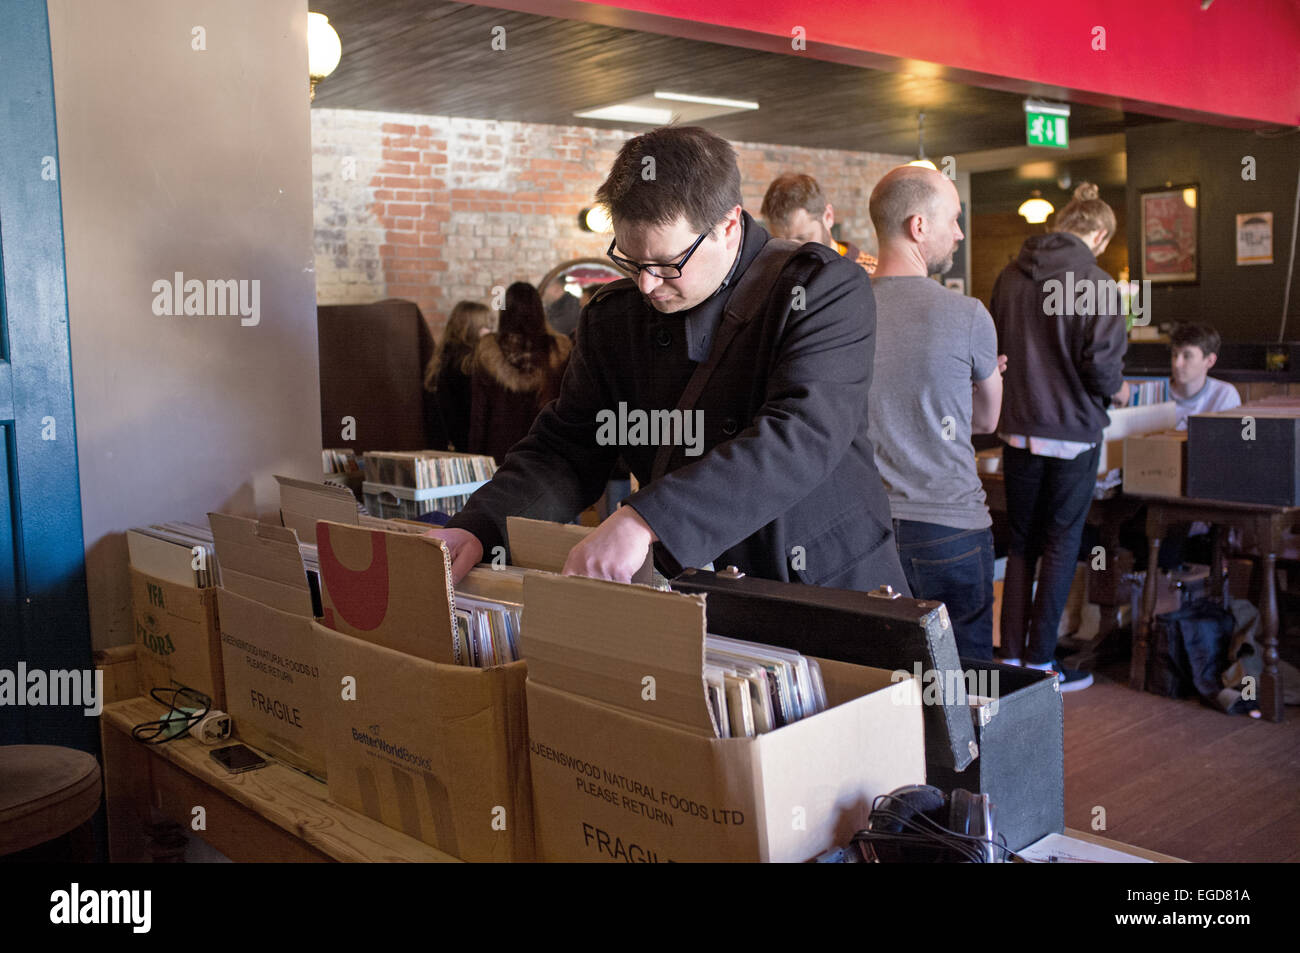 A record collector at a record fair Stock Photo